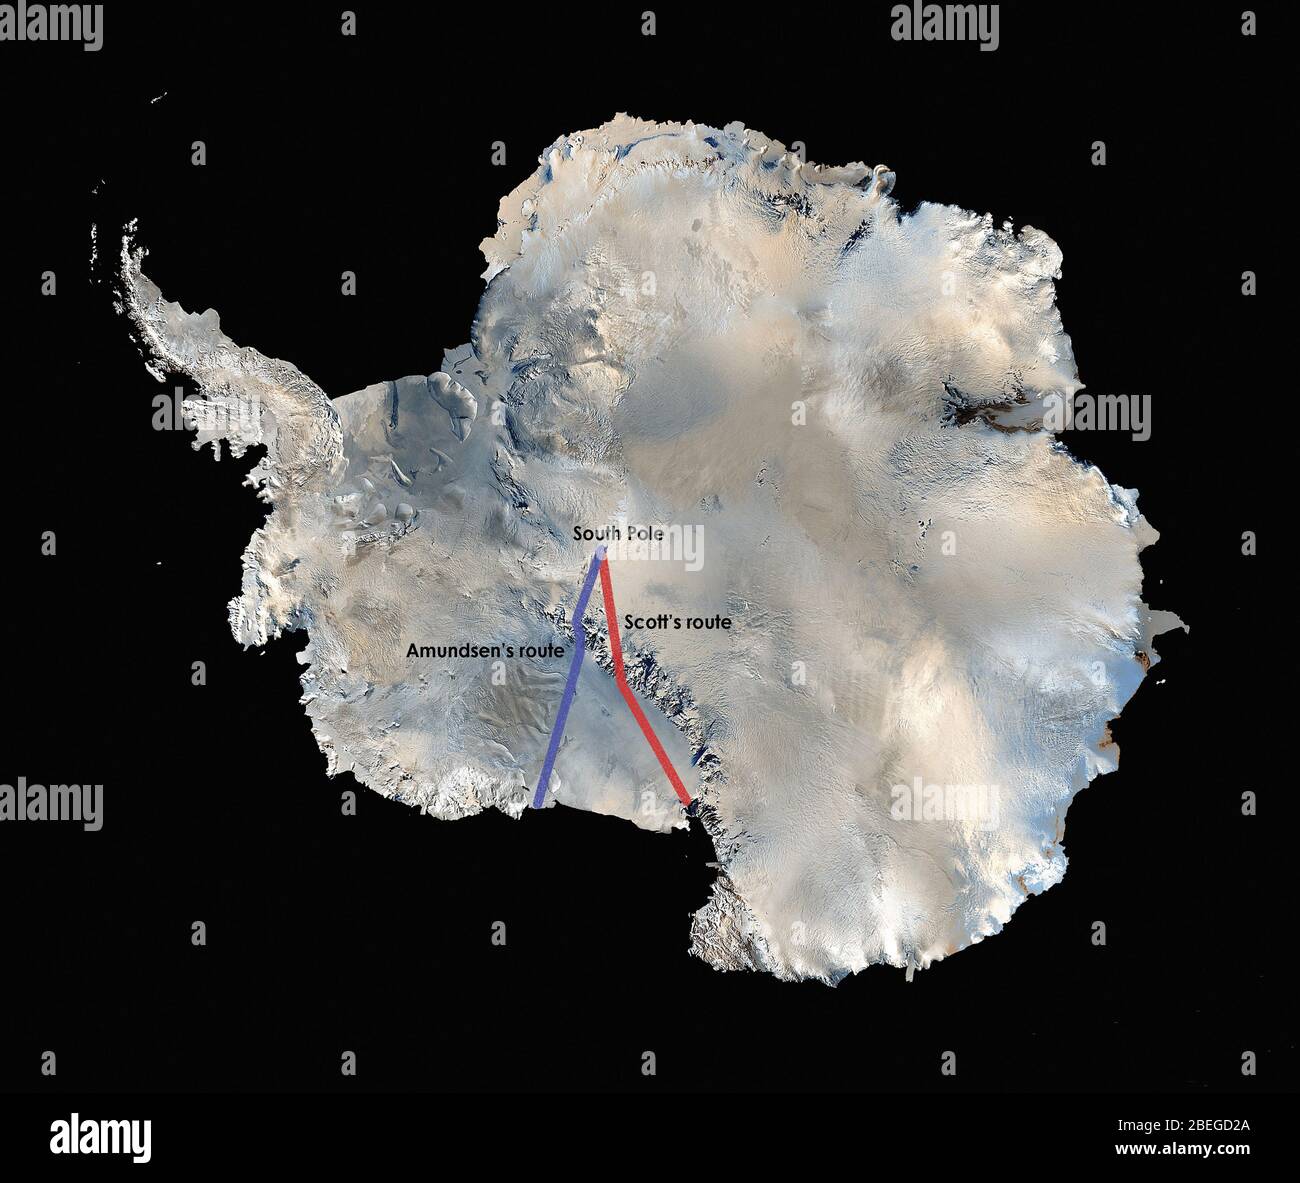 La prima mappa tridimensionale ad alta risoluzione dell'Antartide, a colori reali, è stata costruita a partire da oltre 1,100 immagini provenienti dal satellite Landsat 7. Per creare il Mosaico Landsat Image dell'Antartide (Lima), i visualizzatori scientifici hanno combinato le scene Landsat 7 (acquisite tra il 1999 e il 2001), un modello di elevazione digitale e le misurazioni dei dati di campo. Ci sono voluti anni per cucire insieme tutto per la pubblicazione nel 2007. La NASA ha collaborato con l'USGS, la National Science Foundation e l'Antartico Survey britannico per creare la mappa della più alta, più secca, più fredda, più invernale e più luminosa della baia della Terra Foto Stock